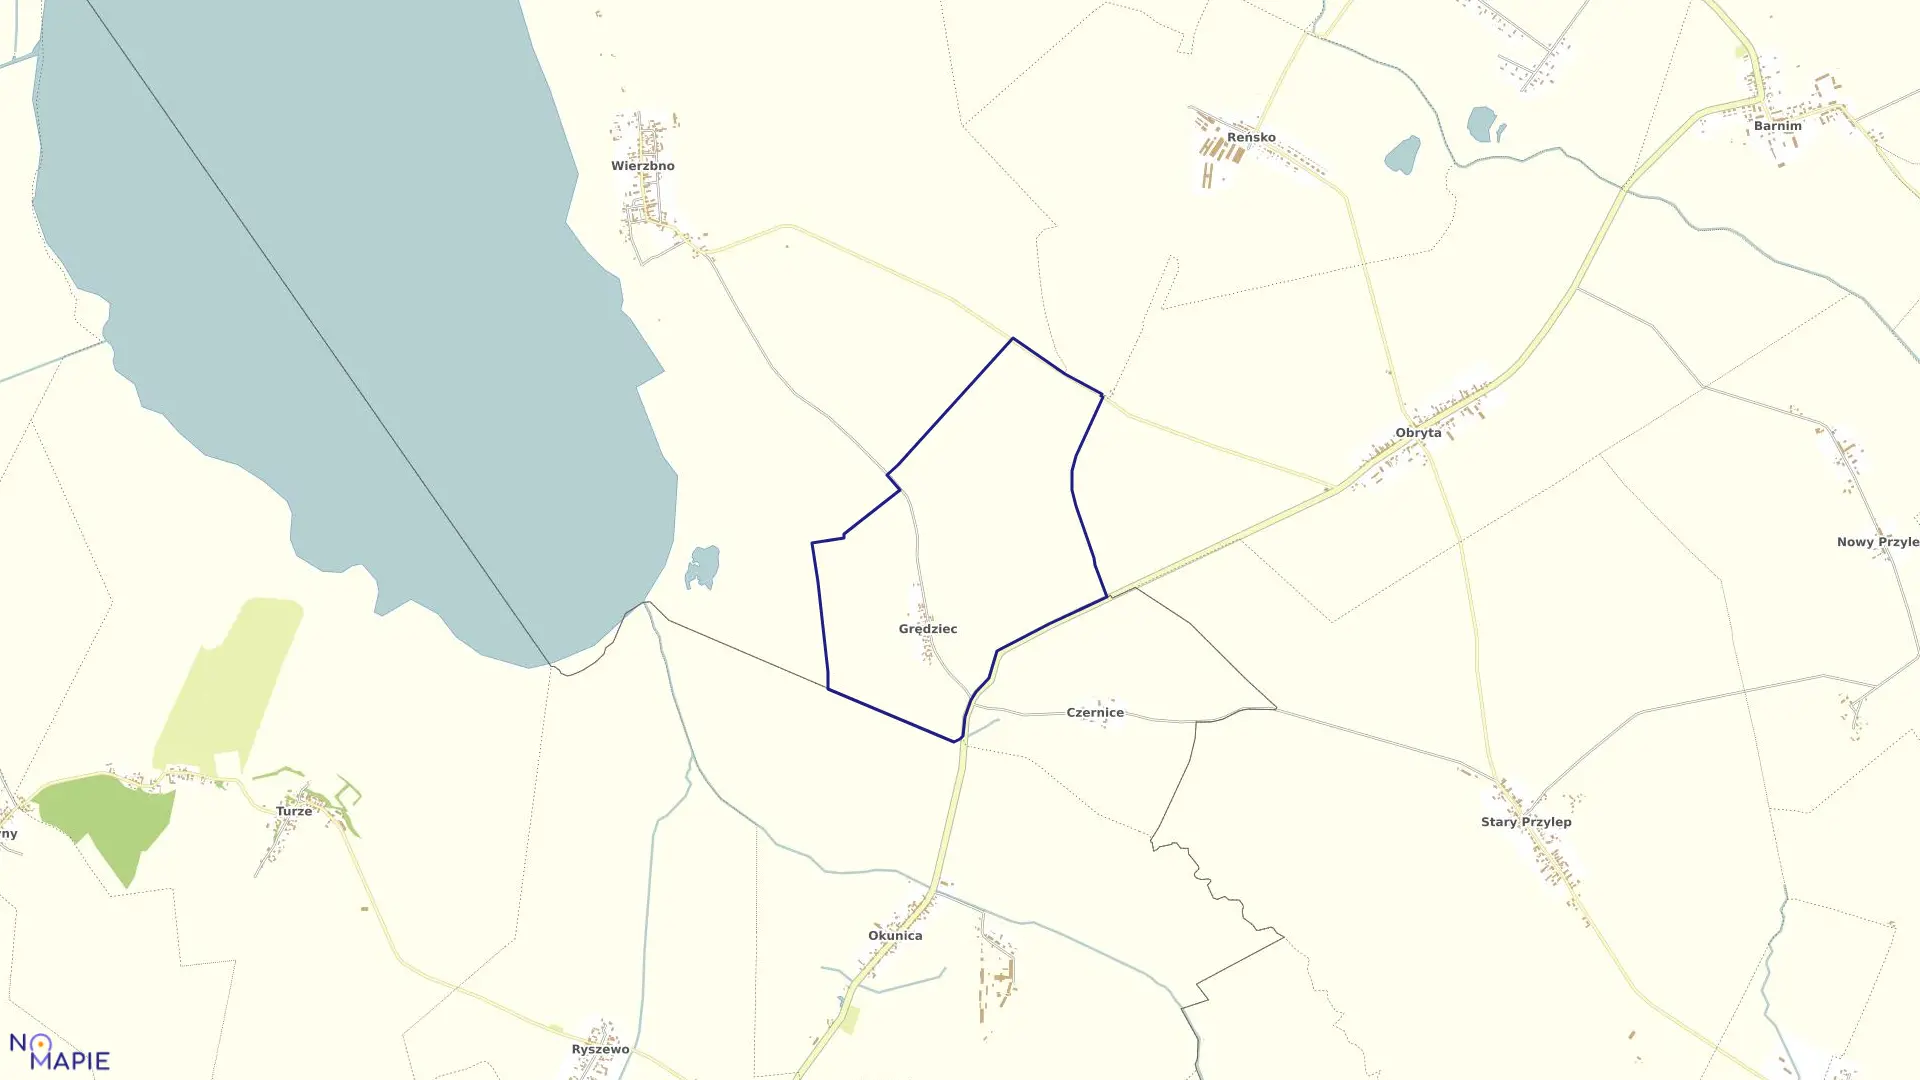 Mapa obrębu Grędziec w gminie Warnice